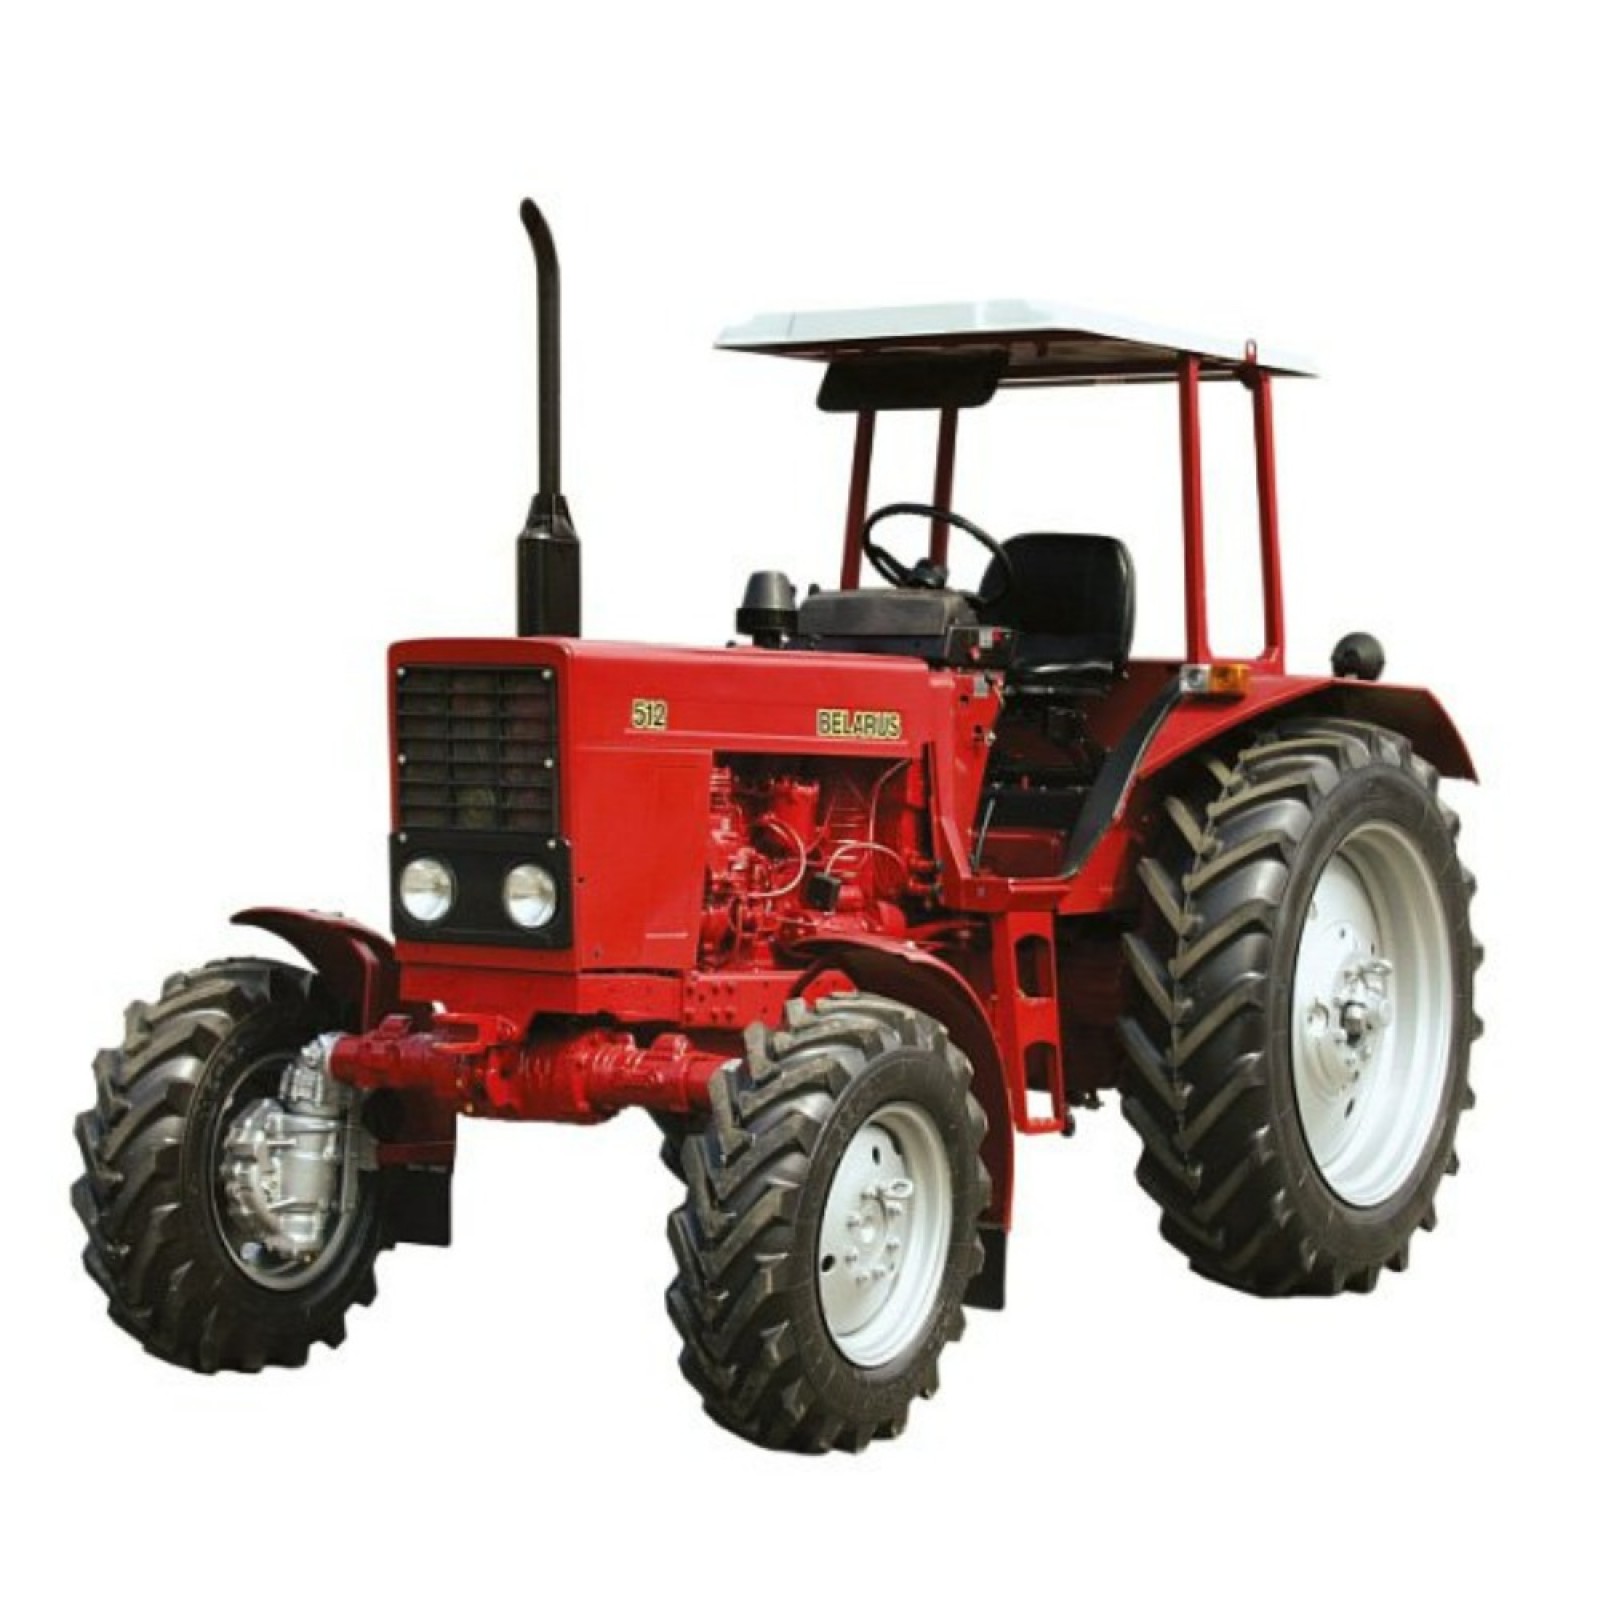 Тракторы BELARUS-510-512